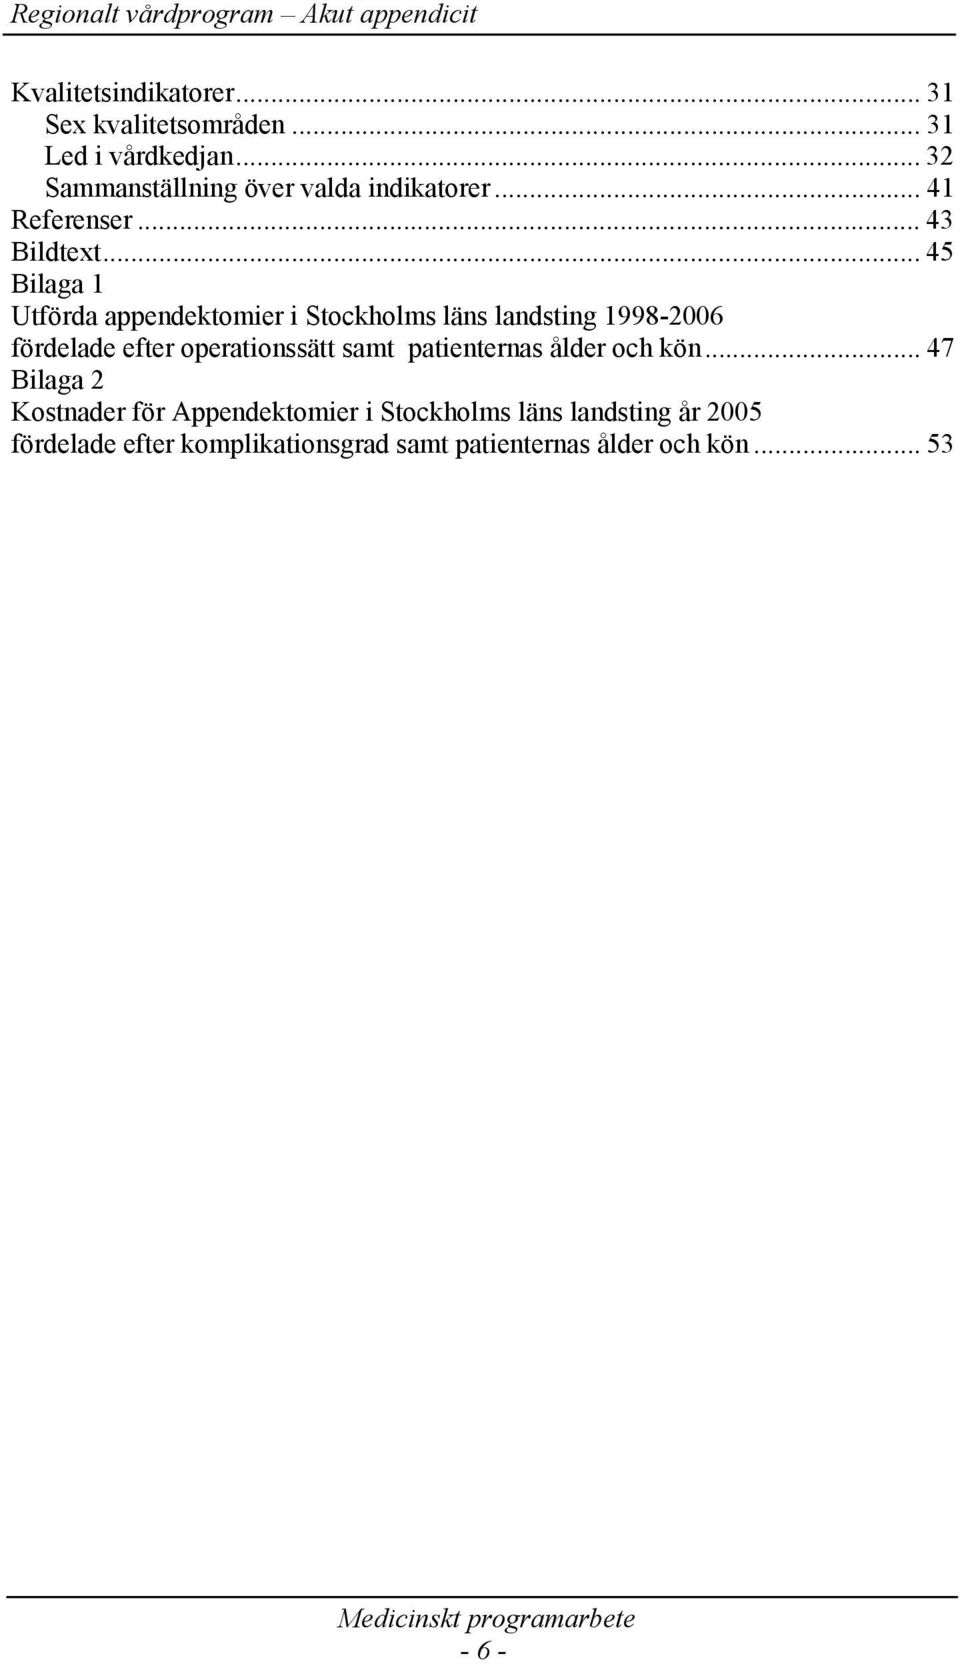 .. 45 Bilaga 1 Utförda appendektomier i Stockholms läns landsting 1998-2006 fördelade efter operationssätt